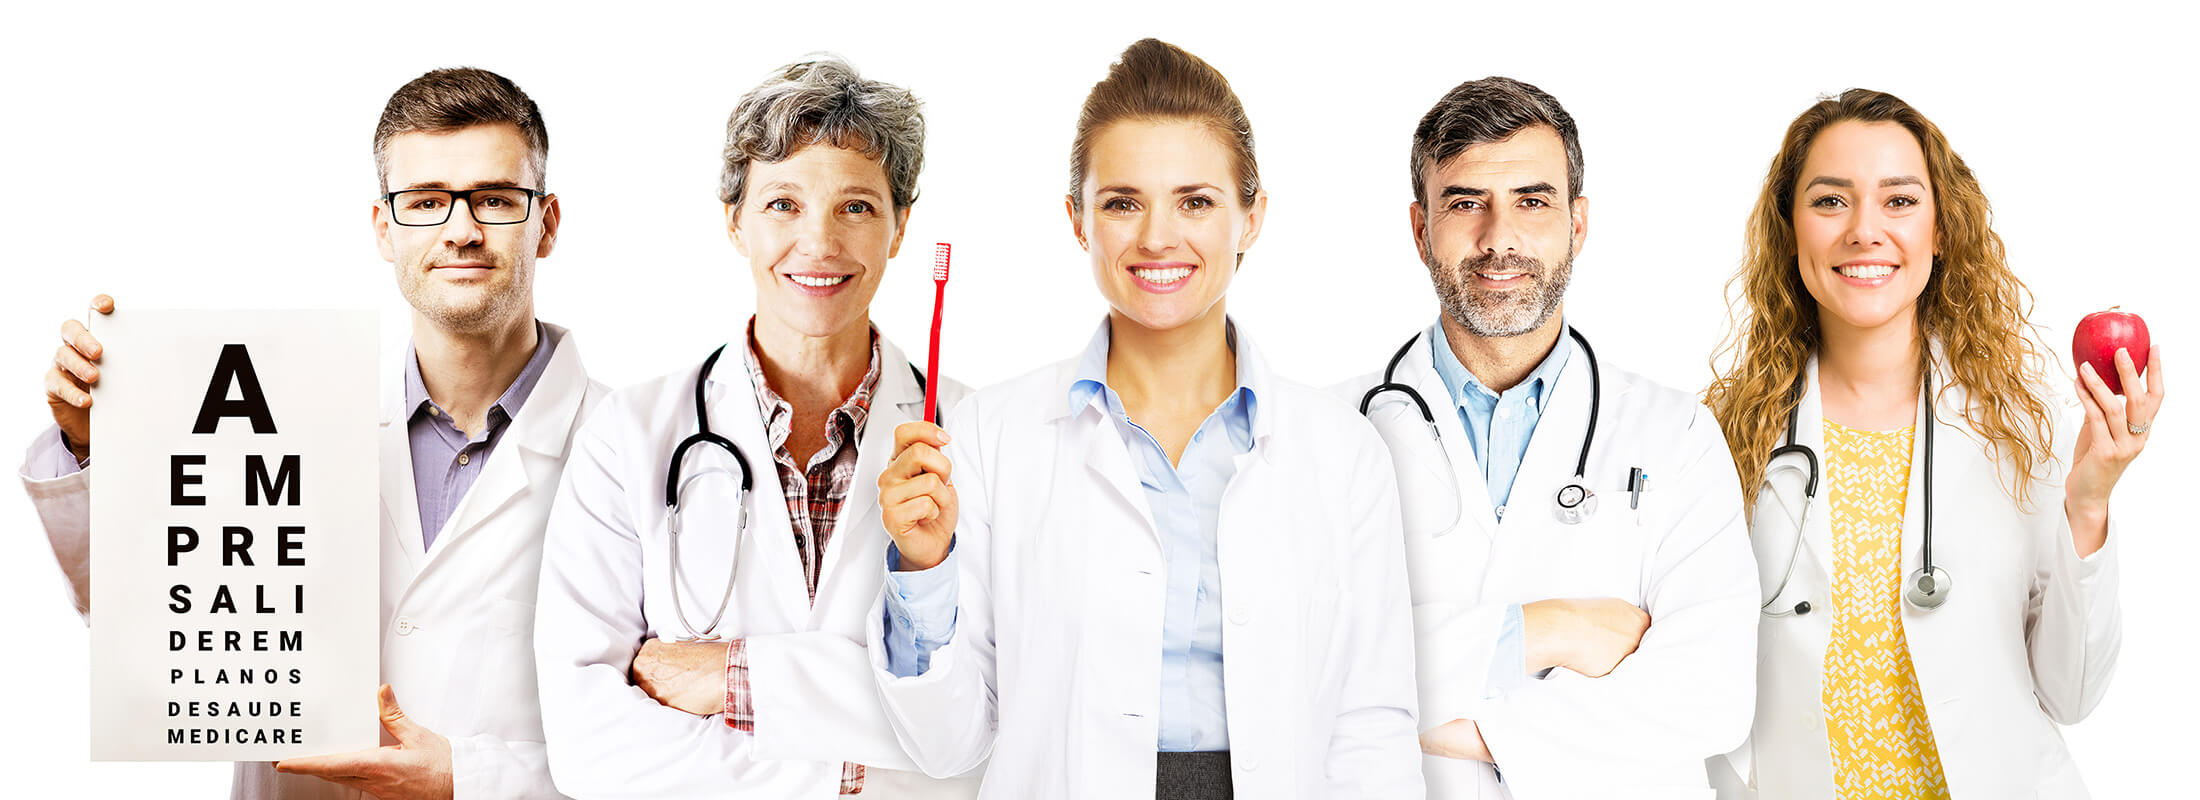 5 profissionais de saúde de diversas áreas